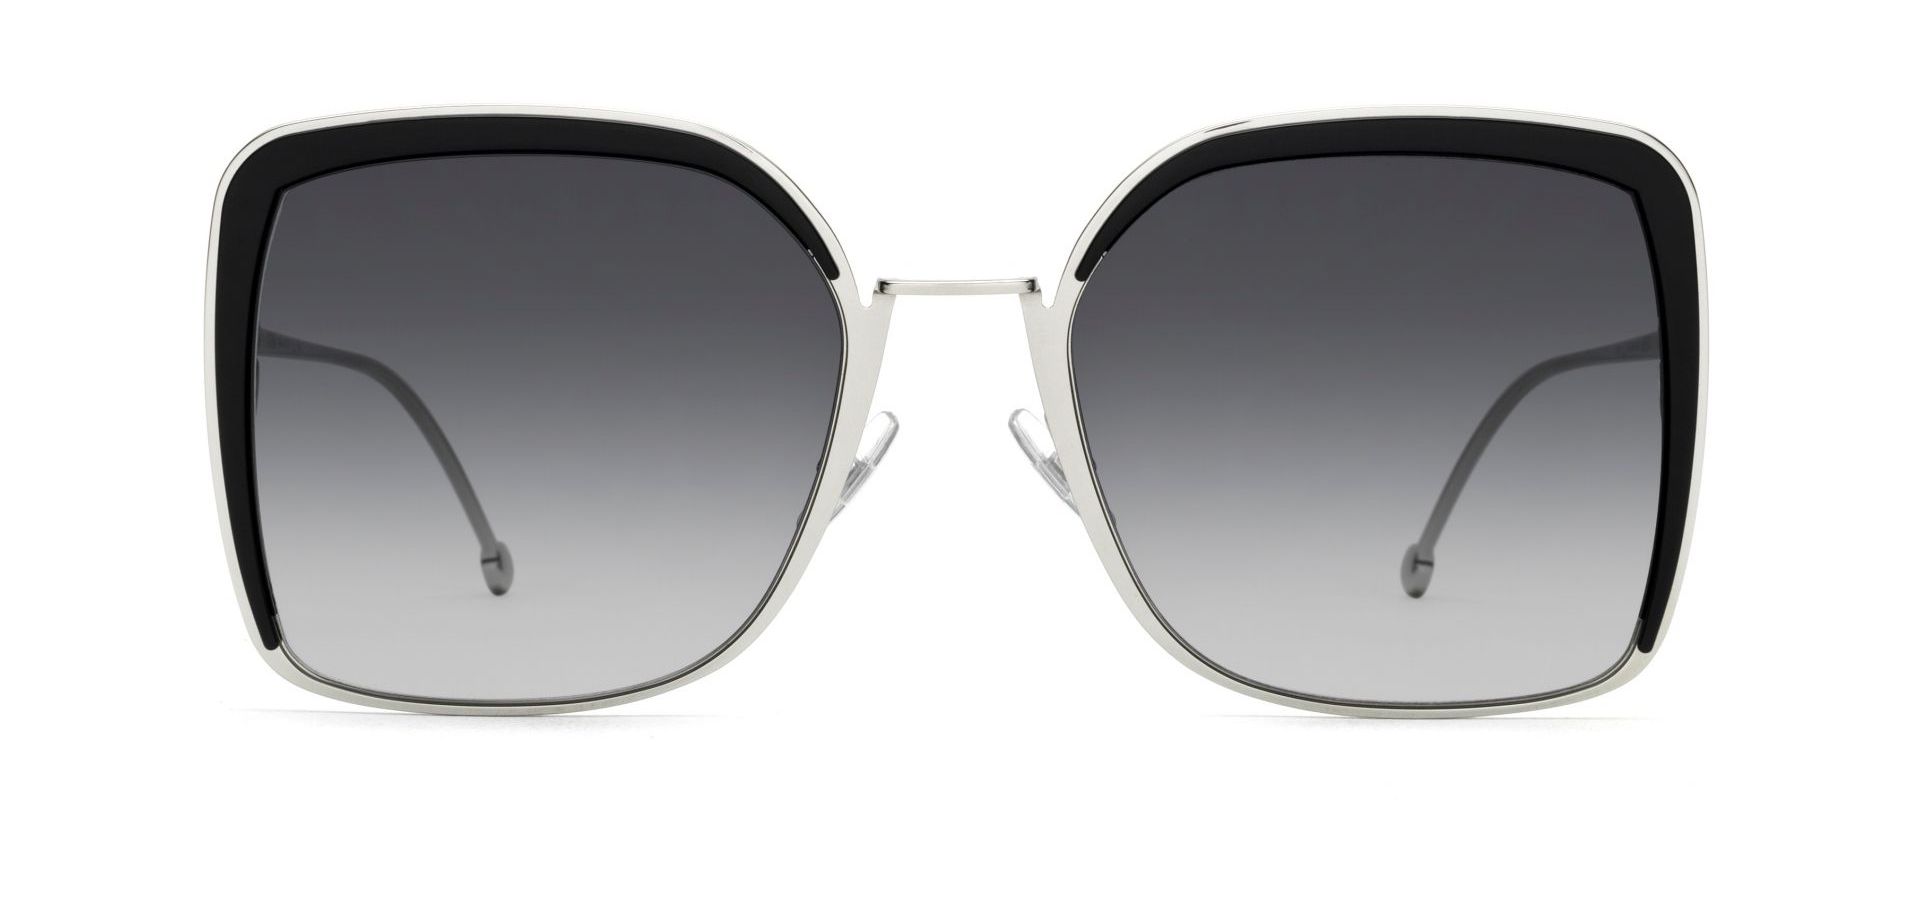 Sunčane naočale Fendi FF 0294/S: Boja: Black Silver, Veličina: 58-21-140, Spol: ženske, Materijal: metal